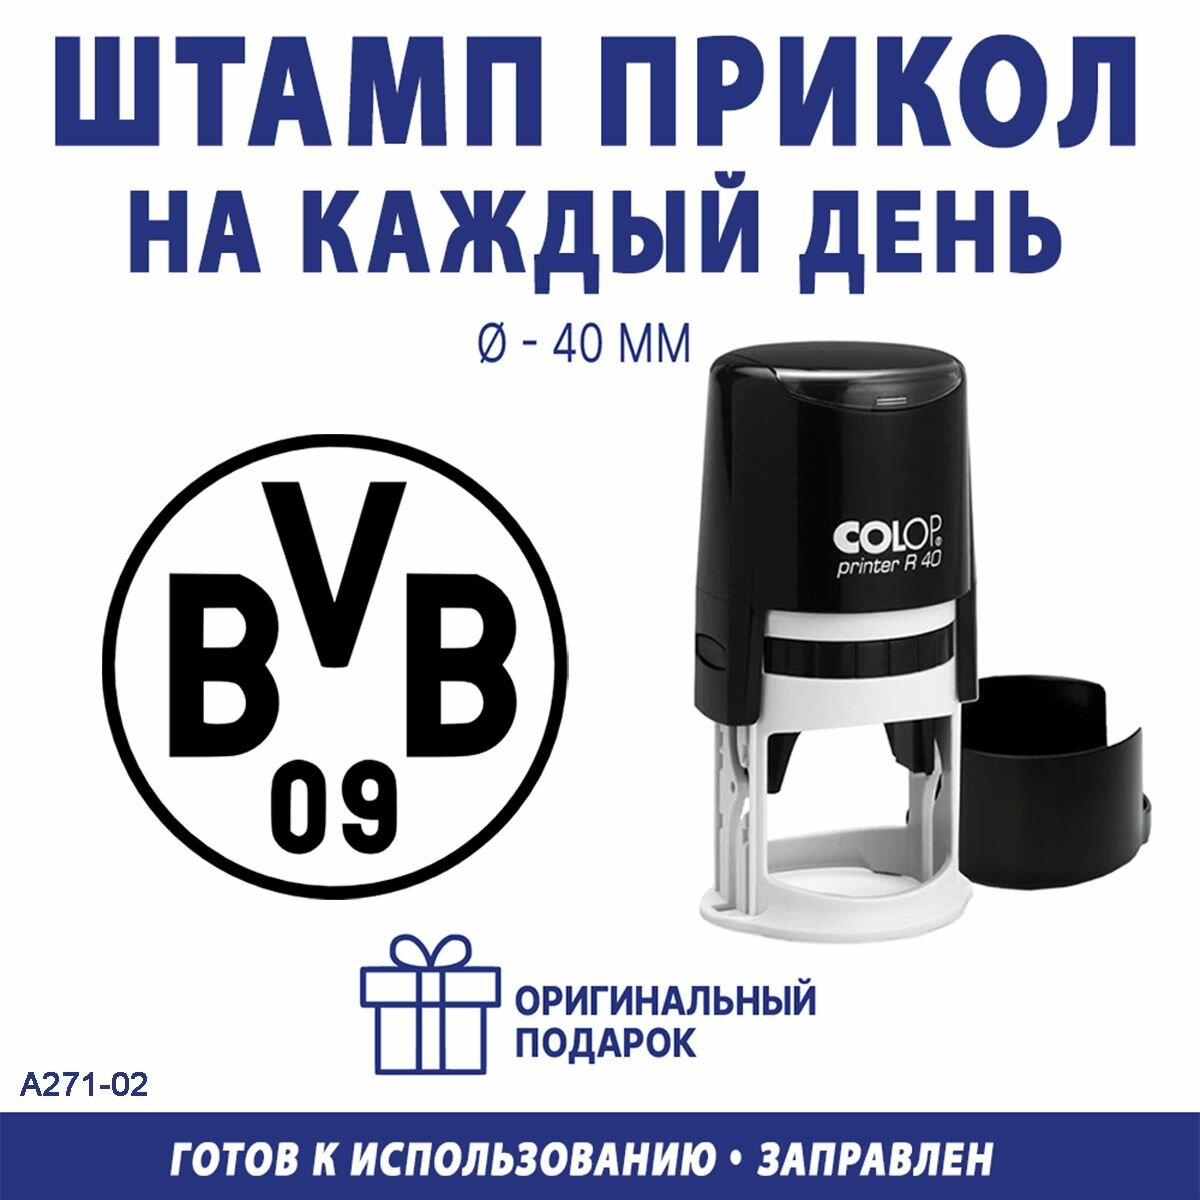 Печать с эмблемой футбольного клуба "Боруссия Дортмунд"